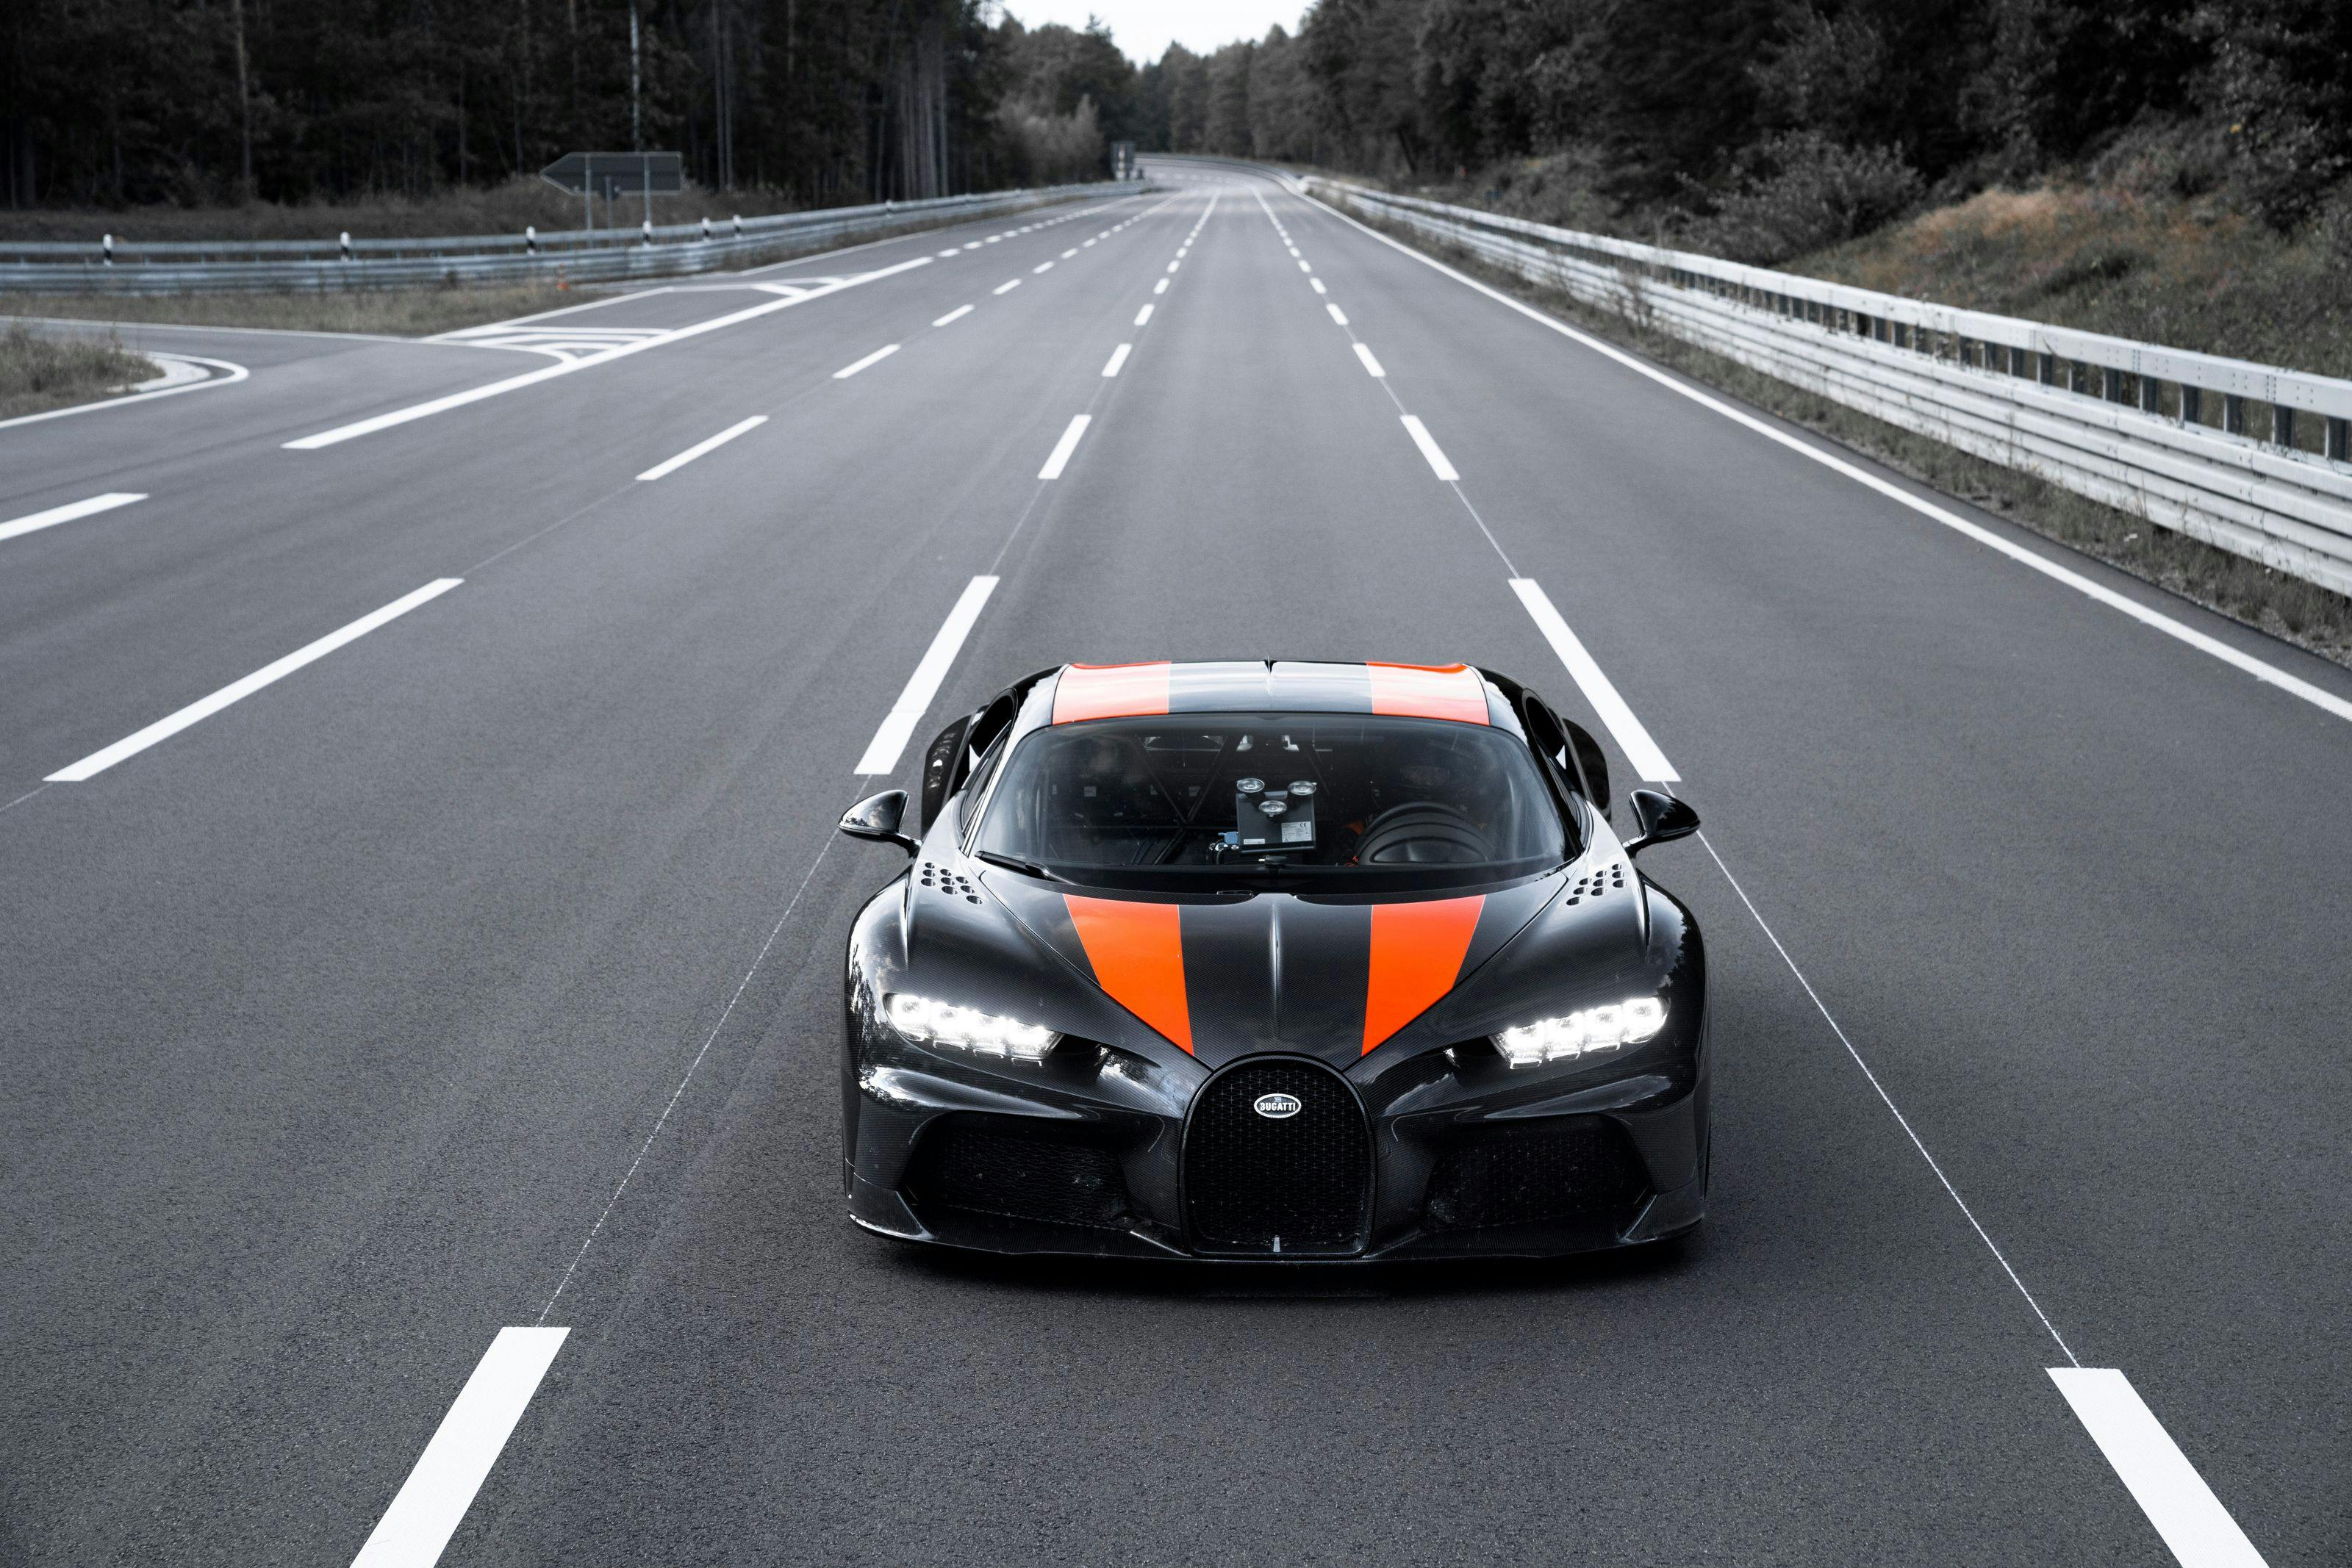 Bugatti dépasse le seuil des 300 mph